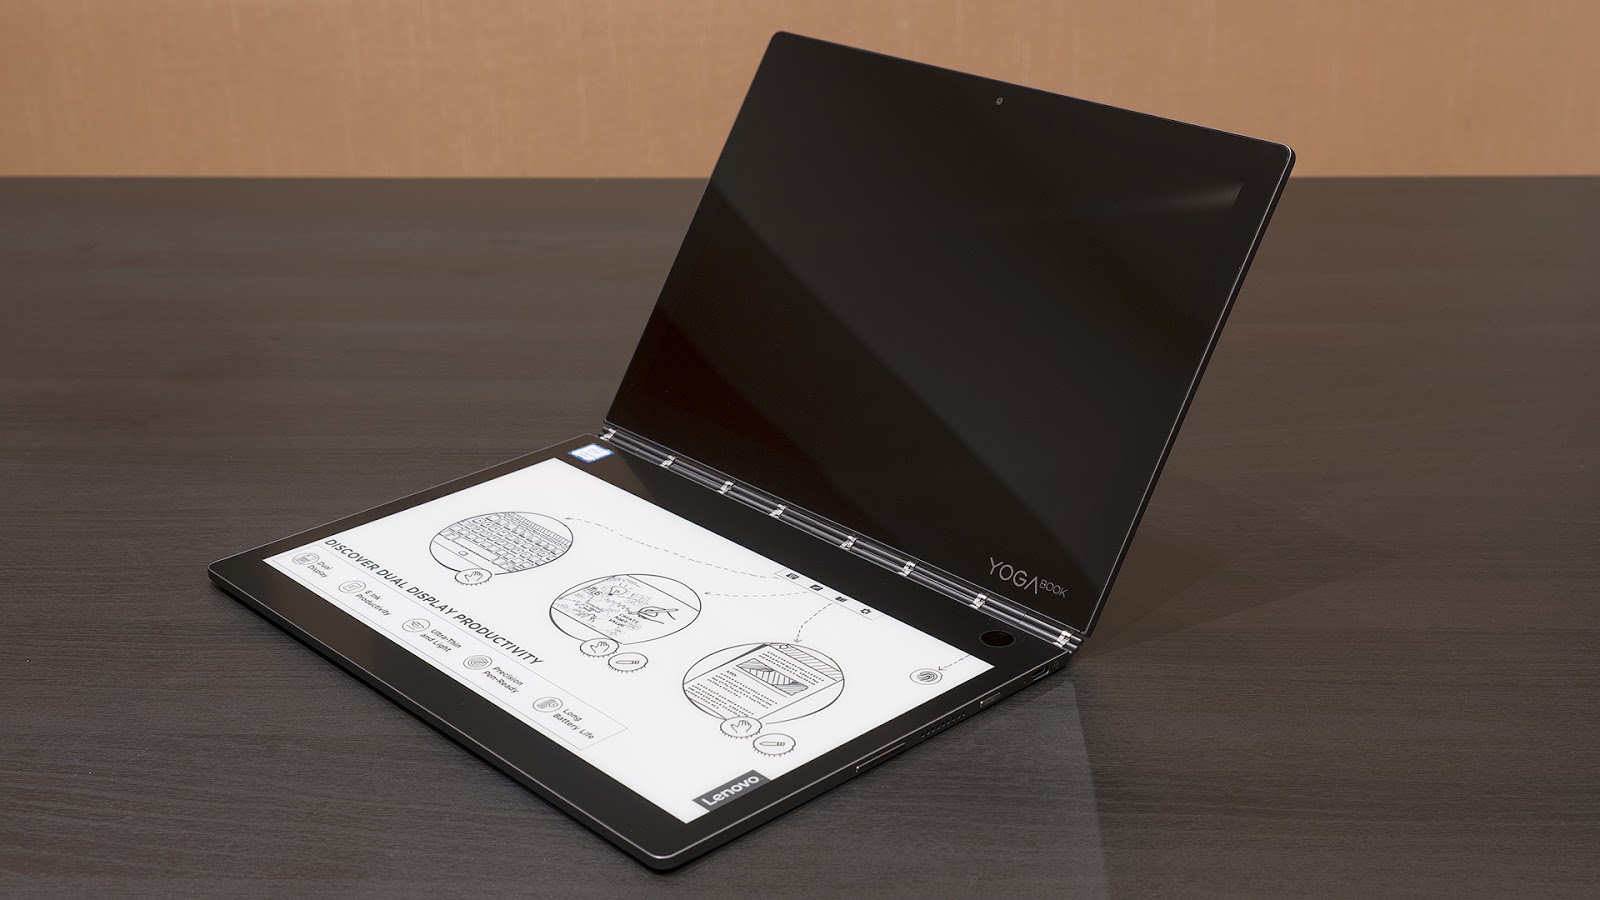 Lenovo YogaBook C930: устройство, которое заменяет сразу четыре гаджета - 12